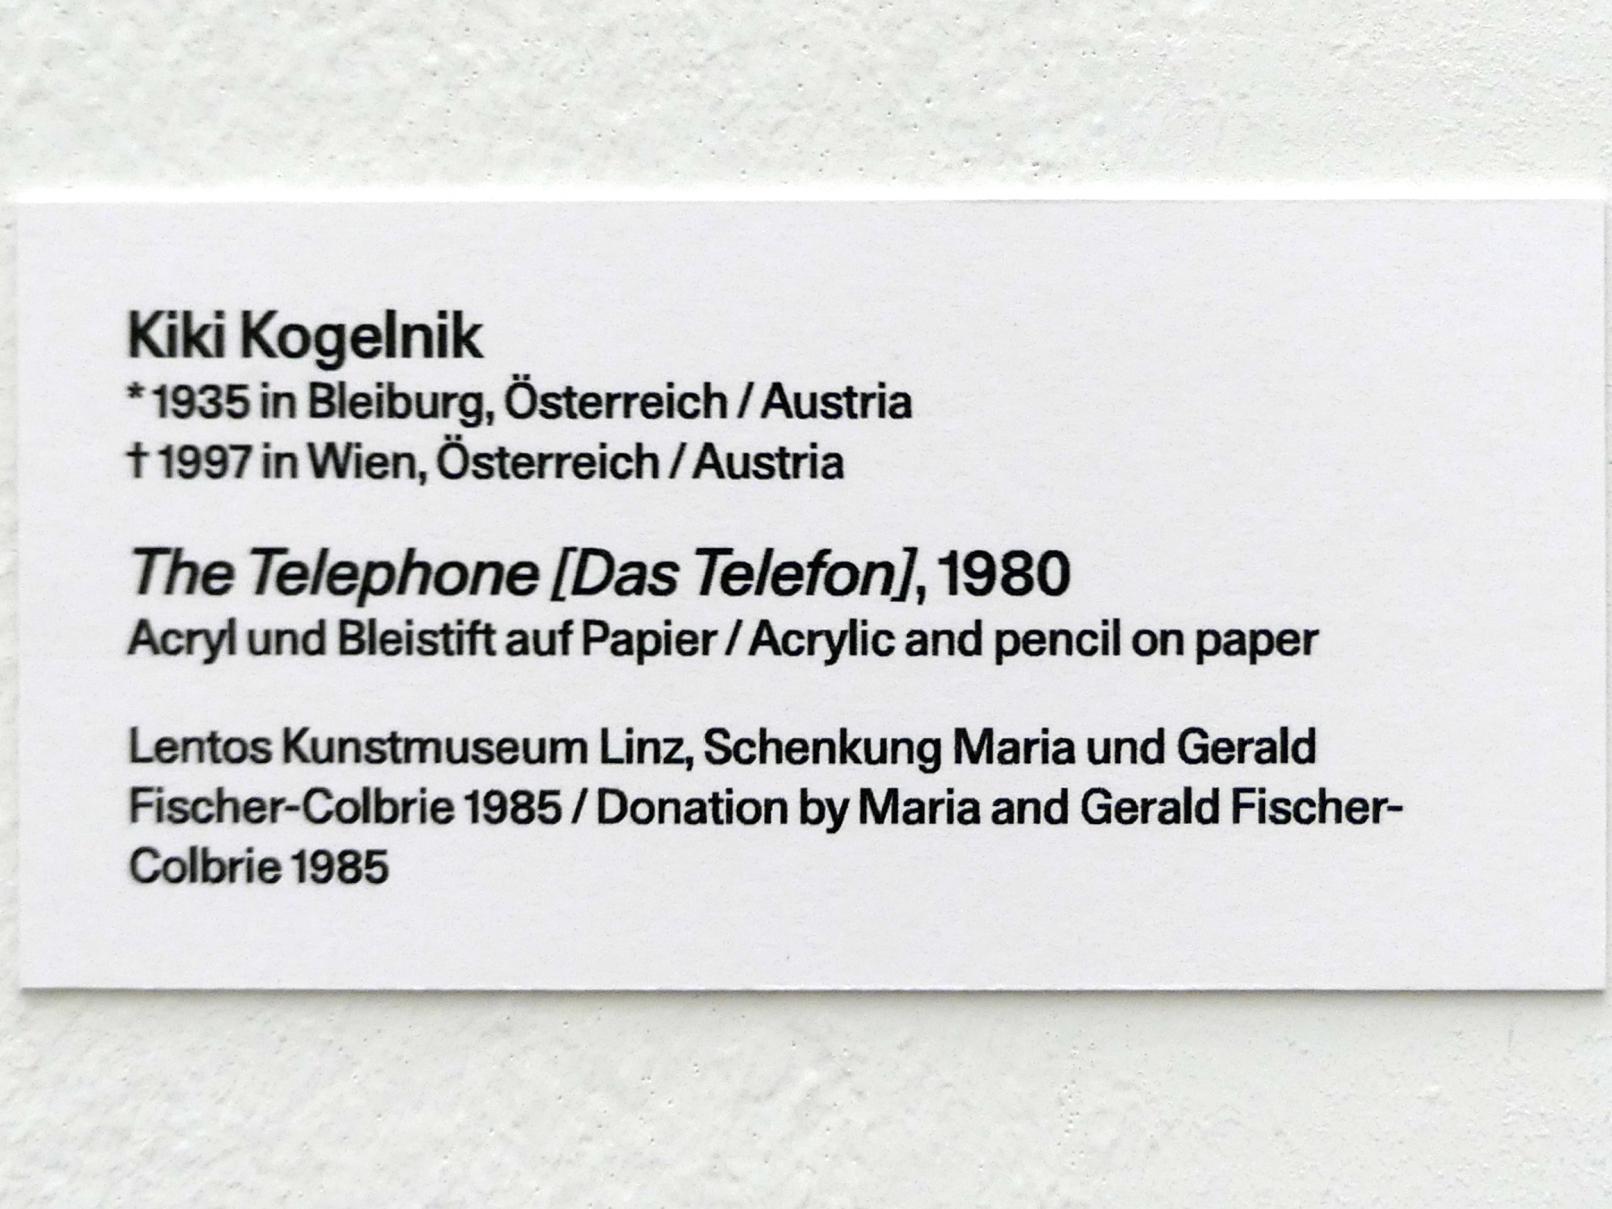 Kiki Kogelnik (1980), The Telephone [Das Telefon], Linz, Lentos Kunstmuseum Linz, Saal 10 - Zu schade für die Lade, 1980, Bild 2/2